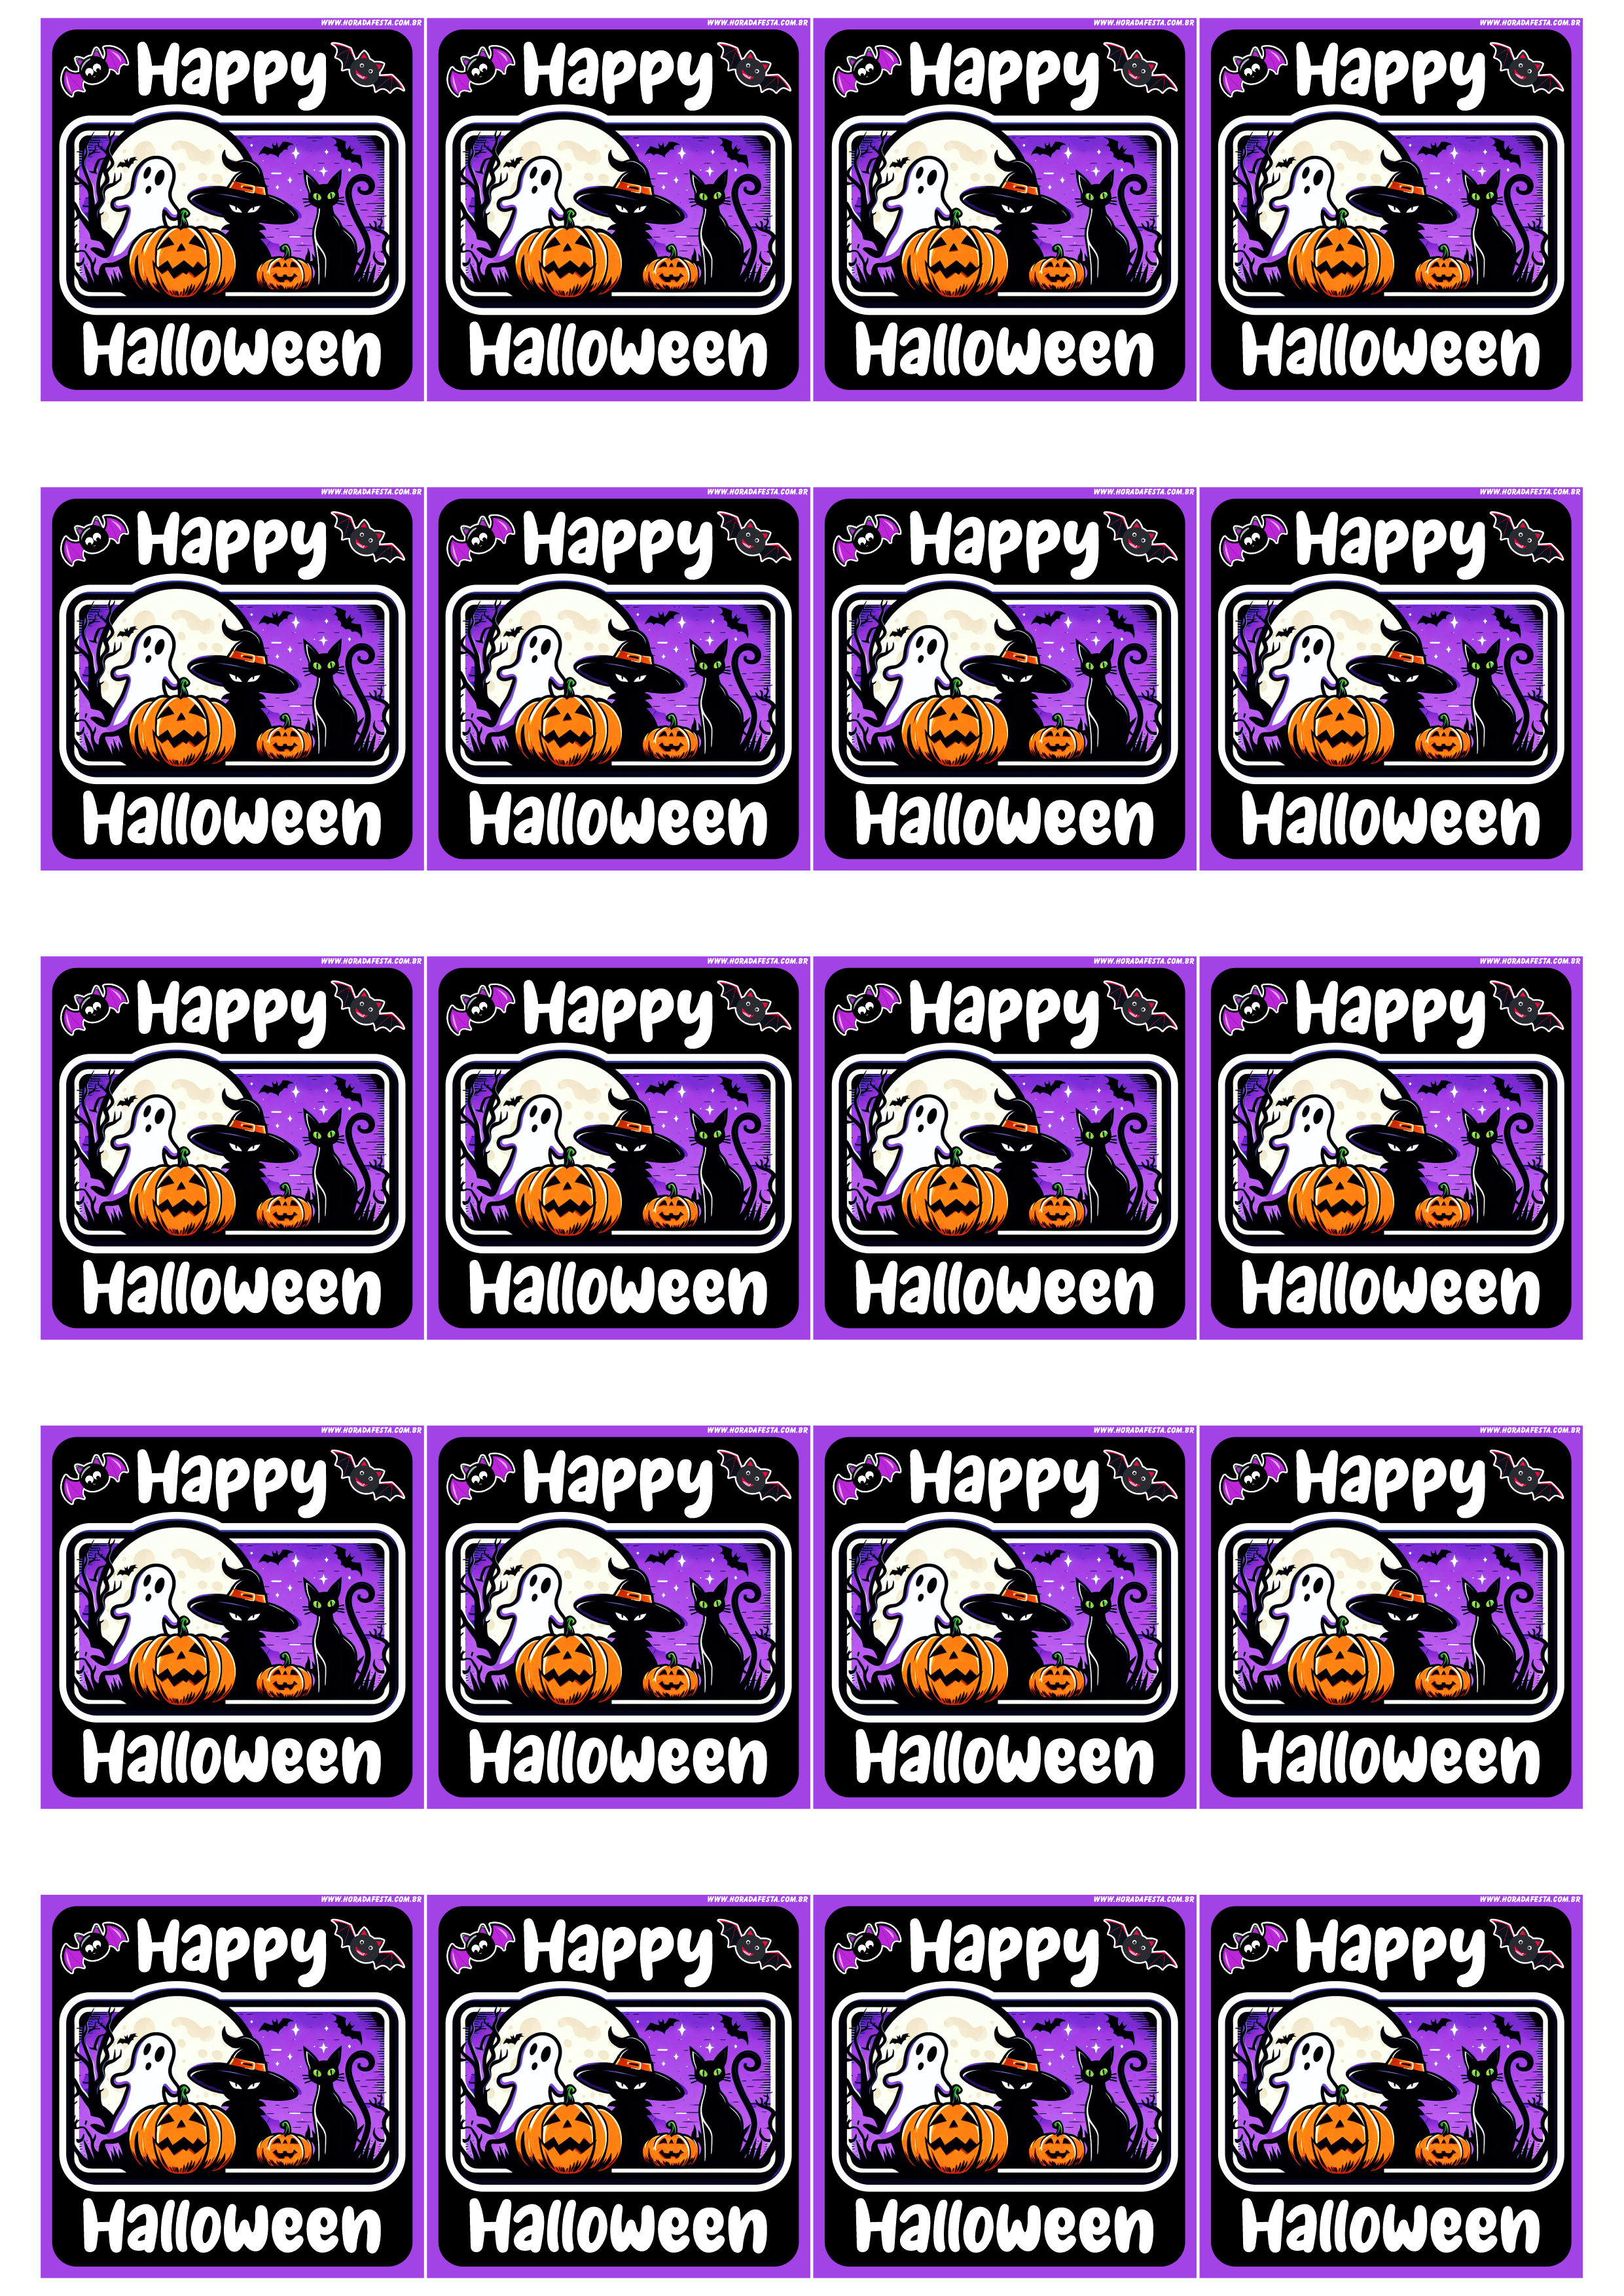 Happy Halloween adesivo tag sticker painel decoração grátis de festa artigos de papelaria artes gráficas 20 imagens png